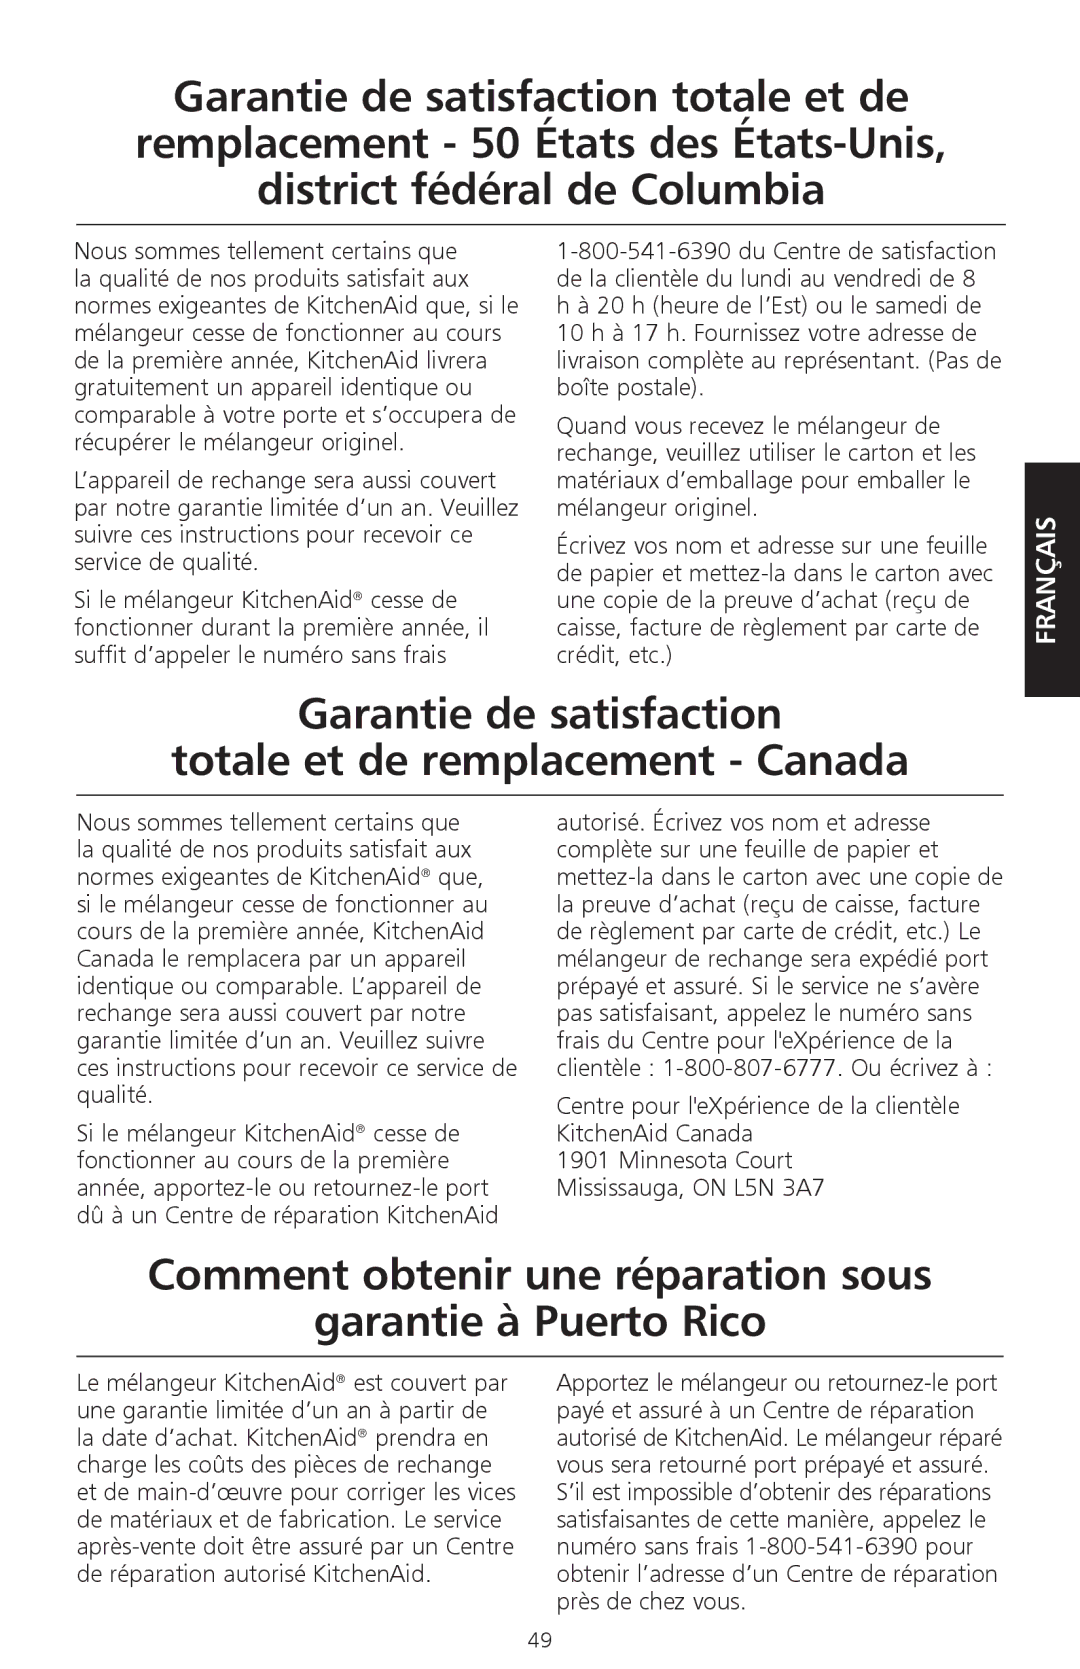 KitchenAid KSB570, KSB560, KSB580 manual Garantie de satisfaction Totale et de remplacement Canada 